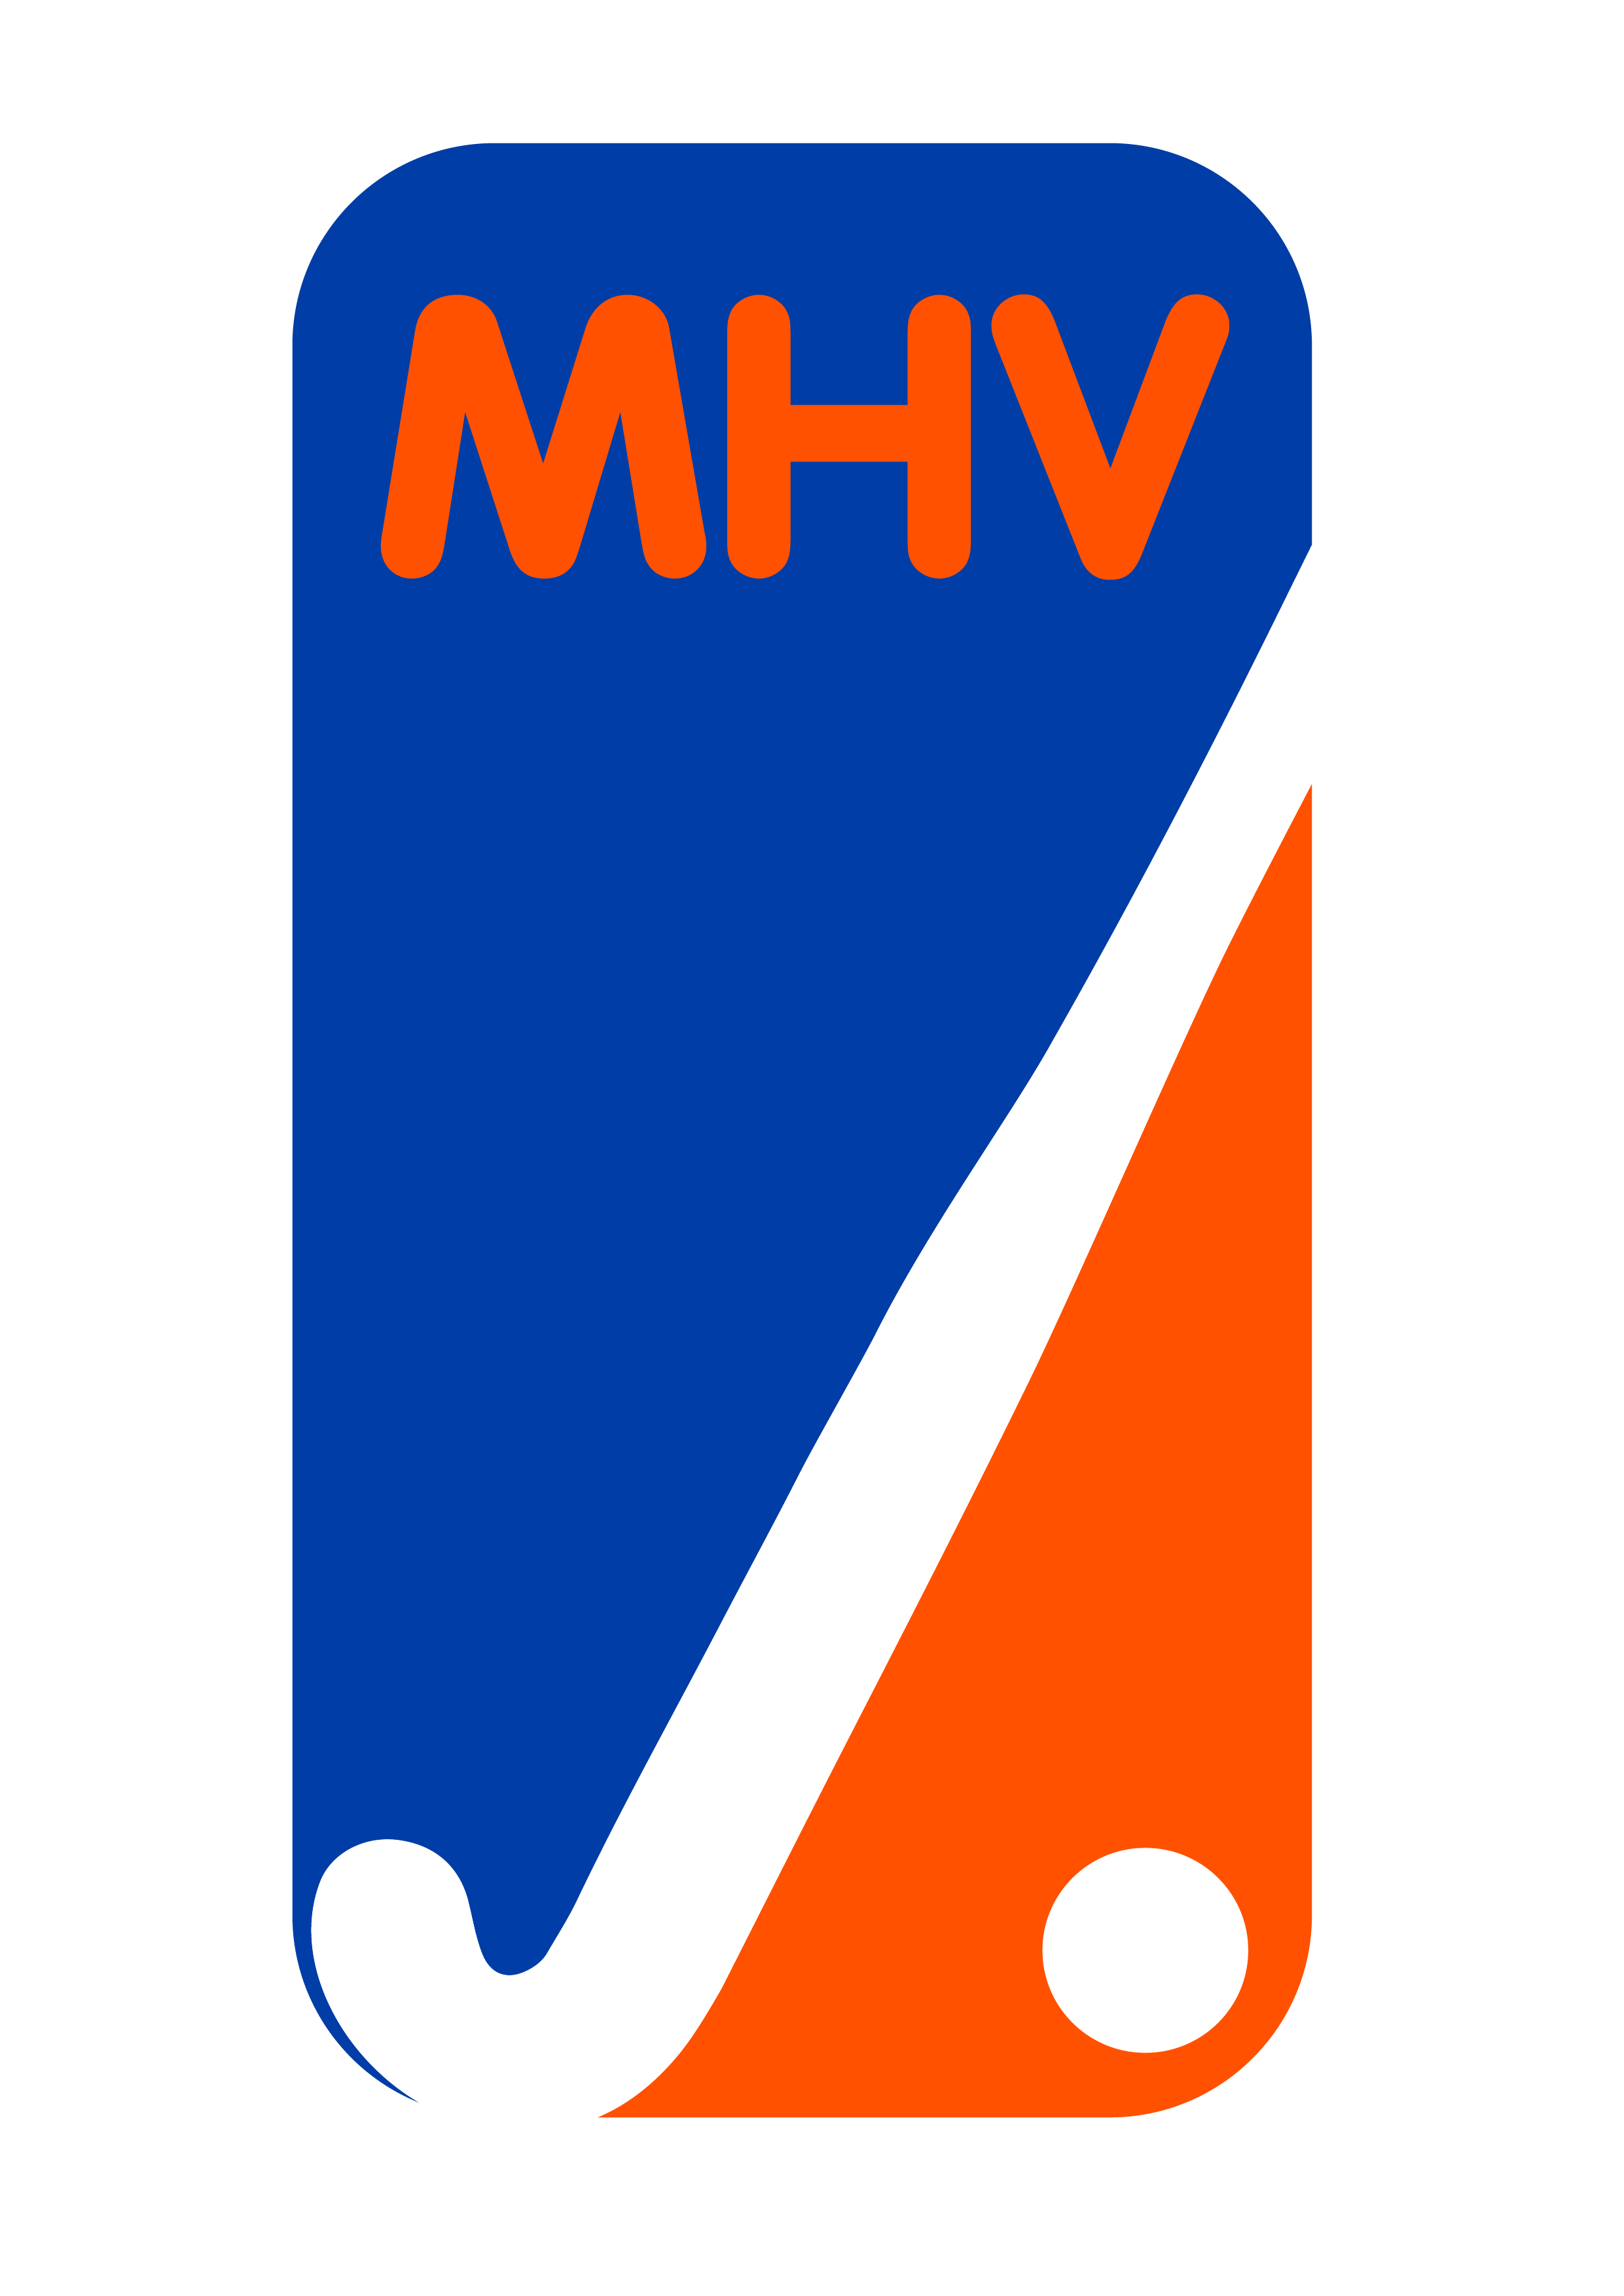 MHV Maarssen